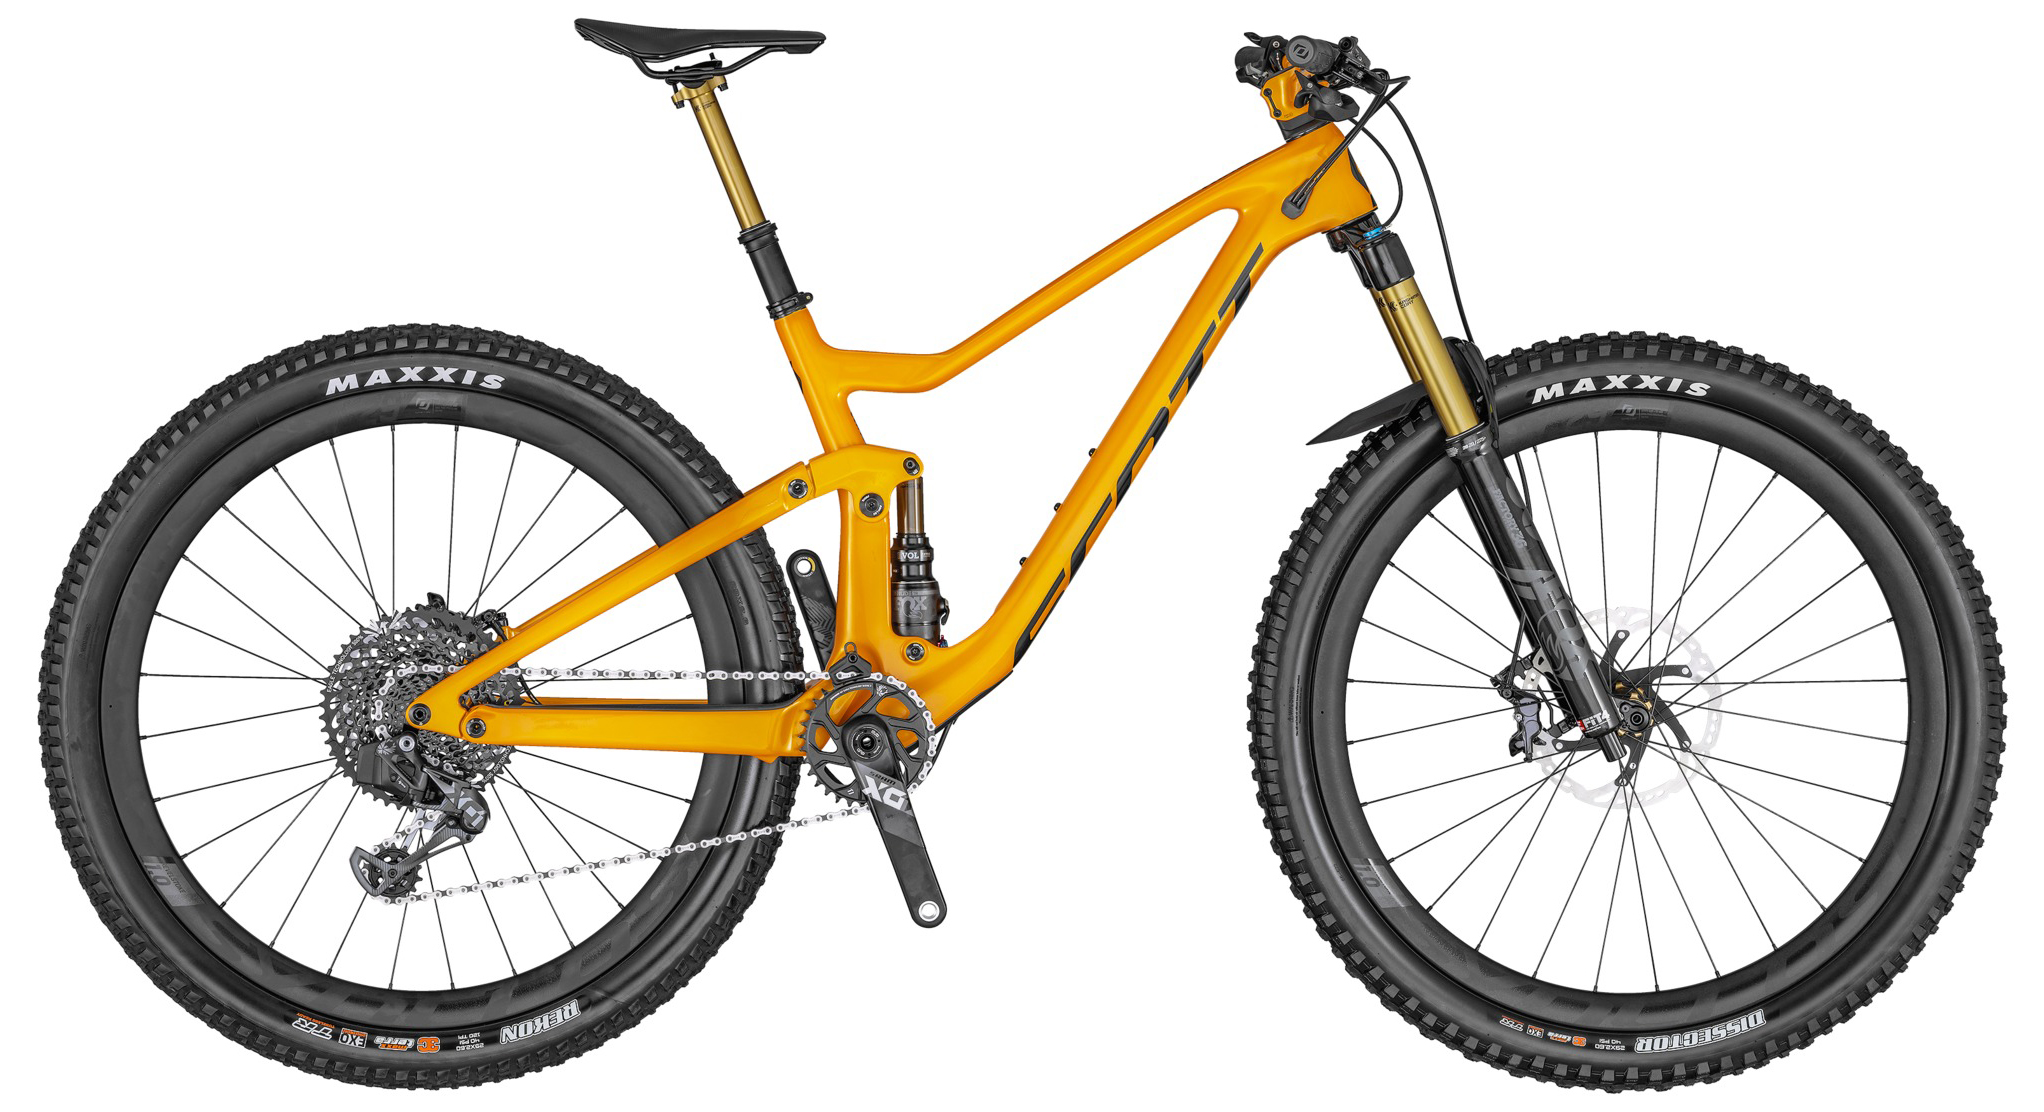  Отзывы о Двухподвесном велосипеде Scott Genius 900 Tuned AXS 2020